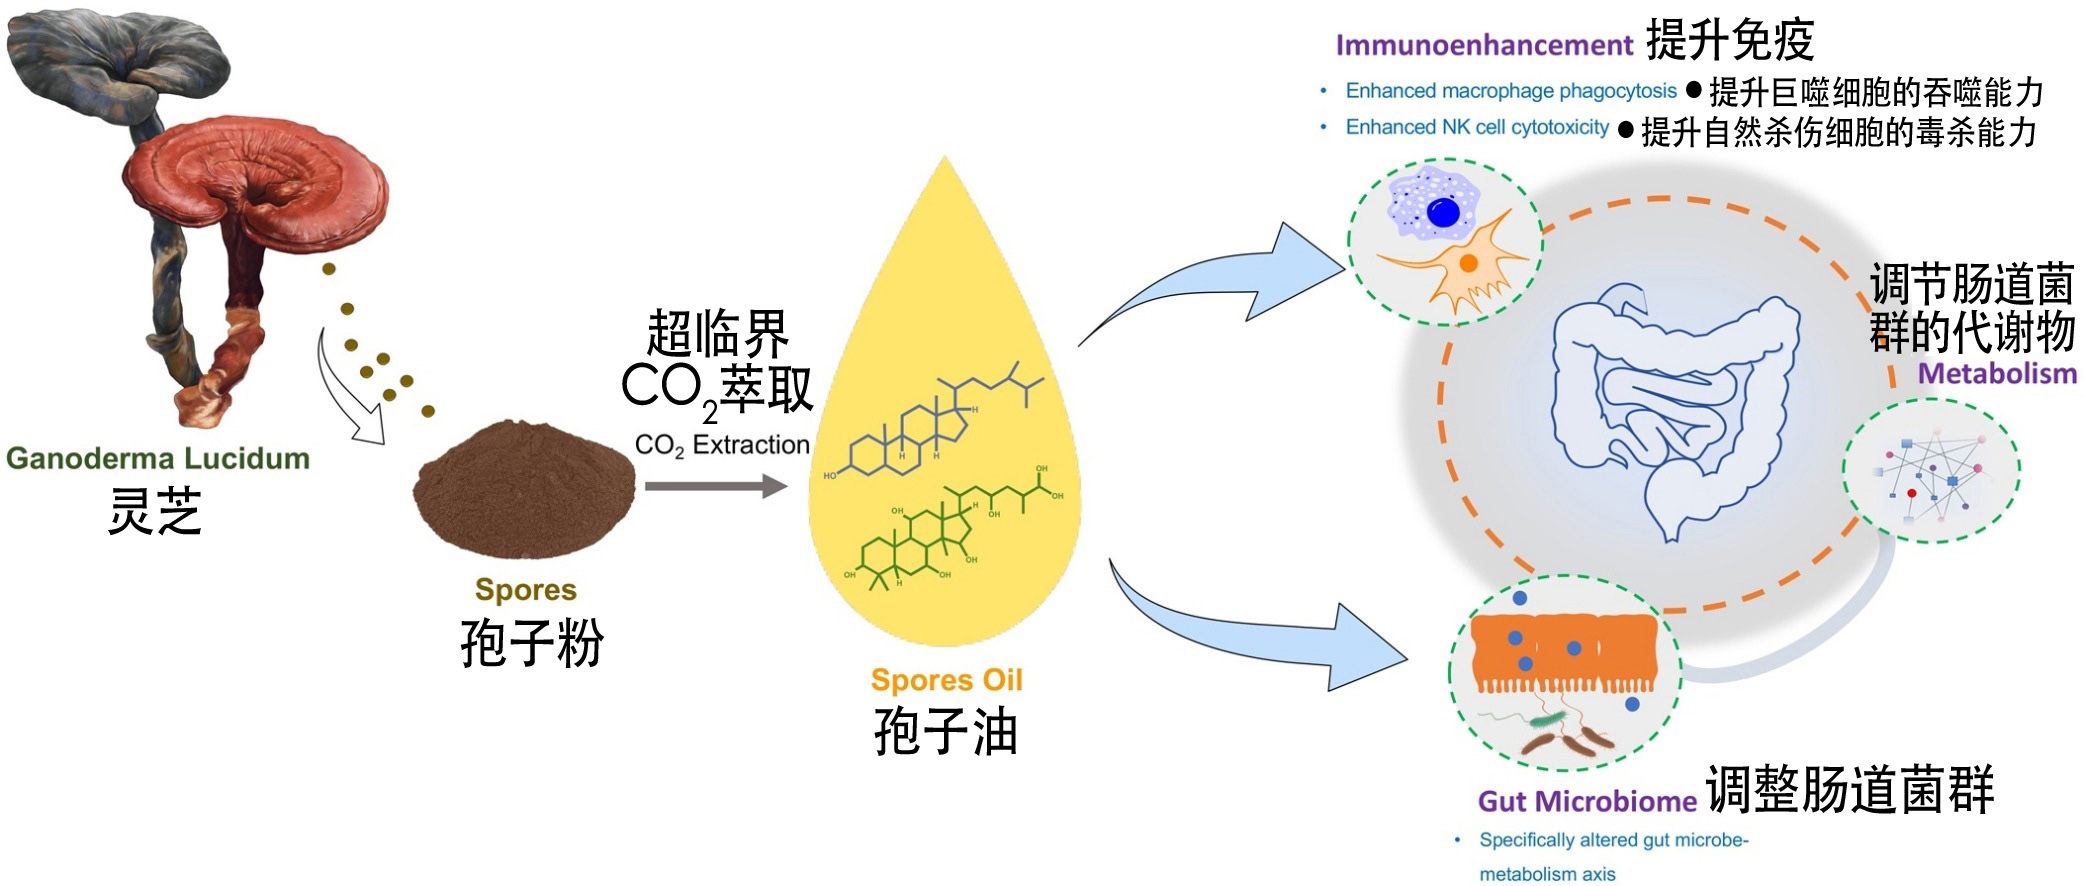 Immunoenhancing Features of Ganoderma Lucidum Spore Oil . jpg